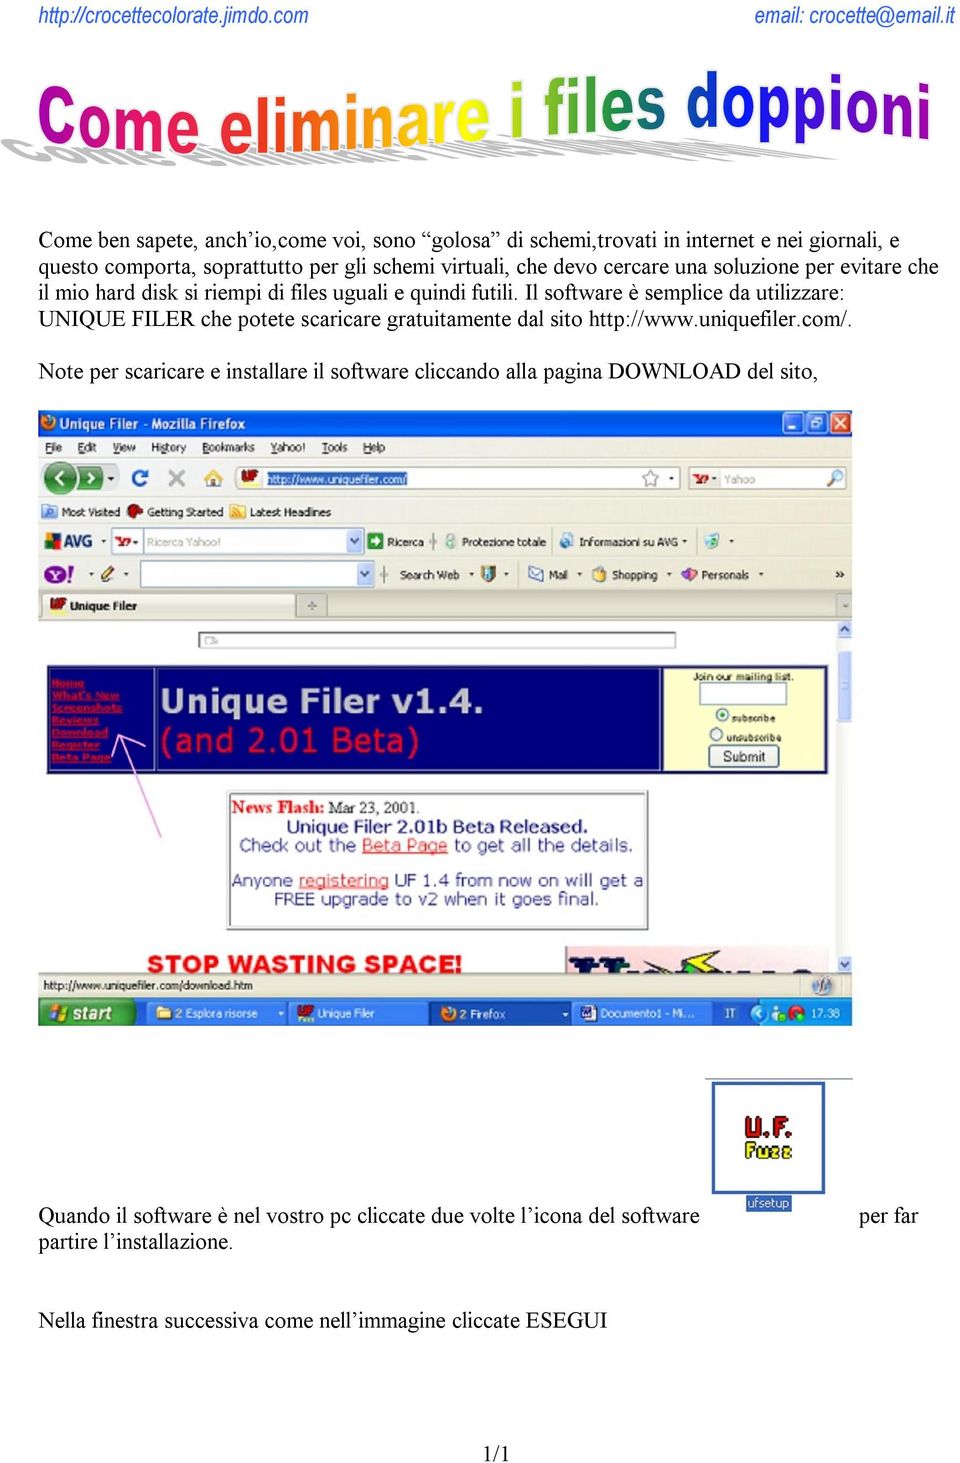 Il software è semplice da utilizzare: UNIQUE FILER che potete scaricare gratuitamente dal sito http://www.uniquefiler.com/.